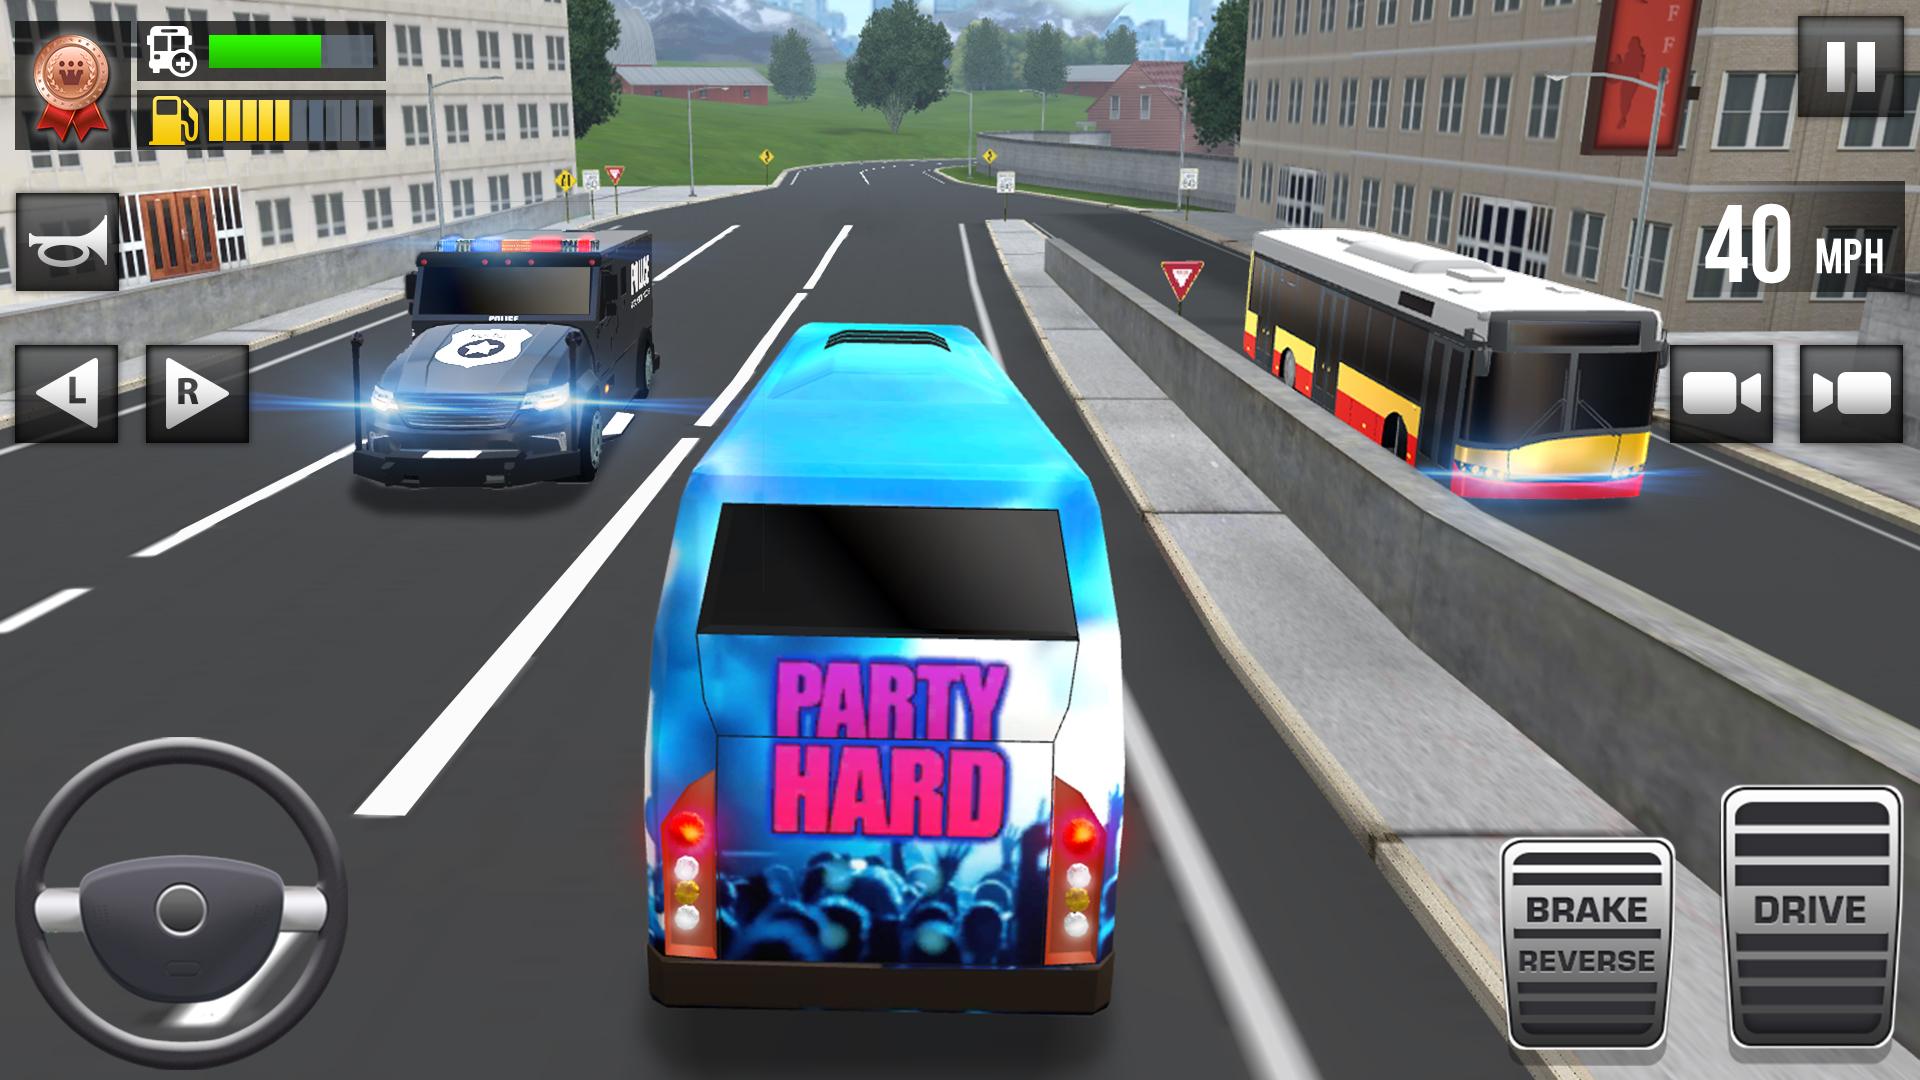 Ultimate Bus Driving - 3D Driver Simulator 2020 1.9 Screenshot 8